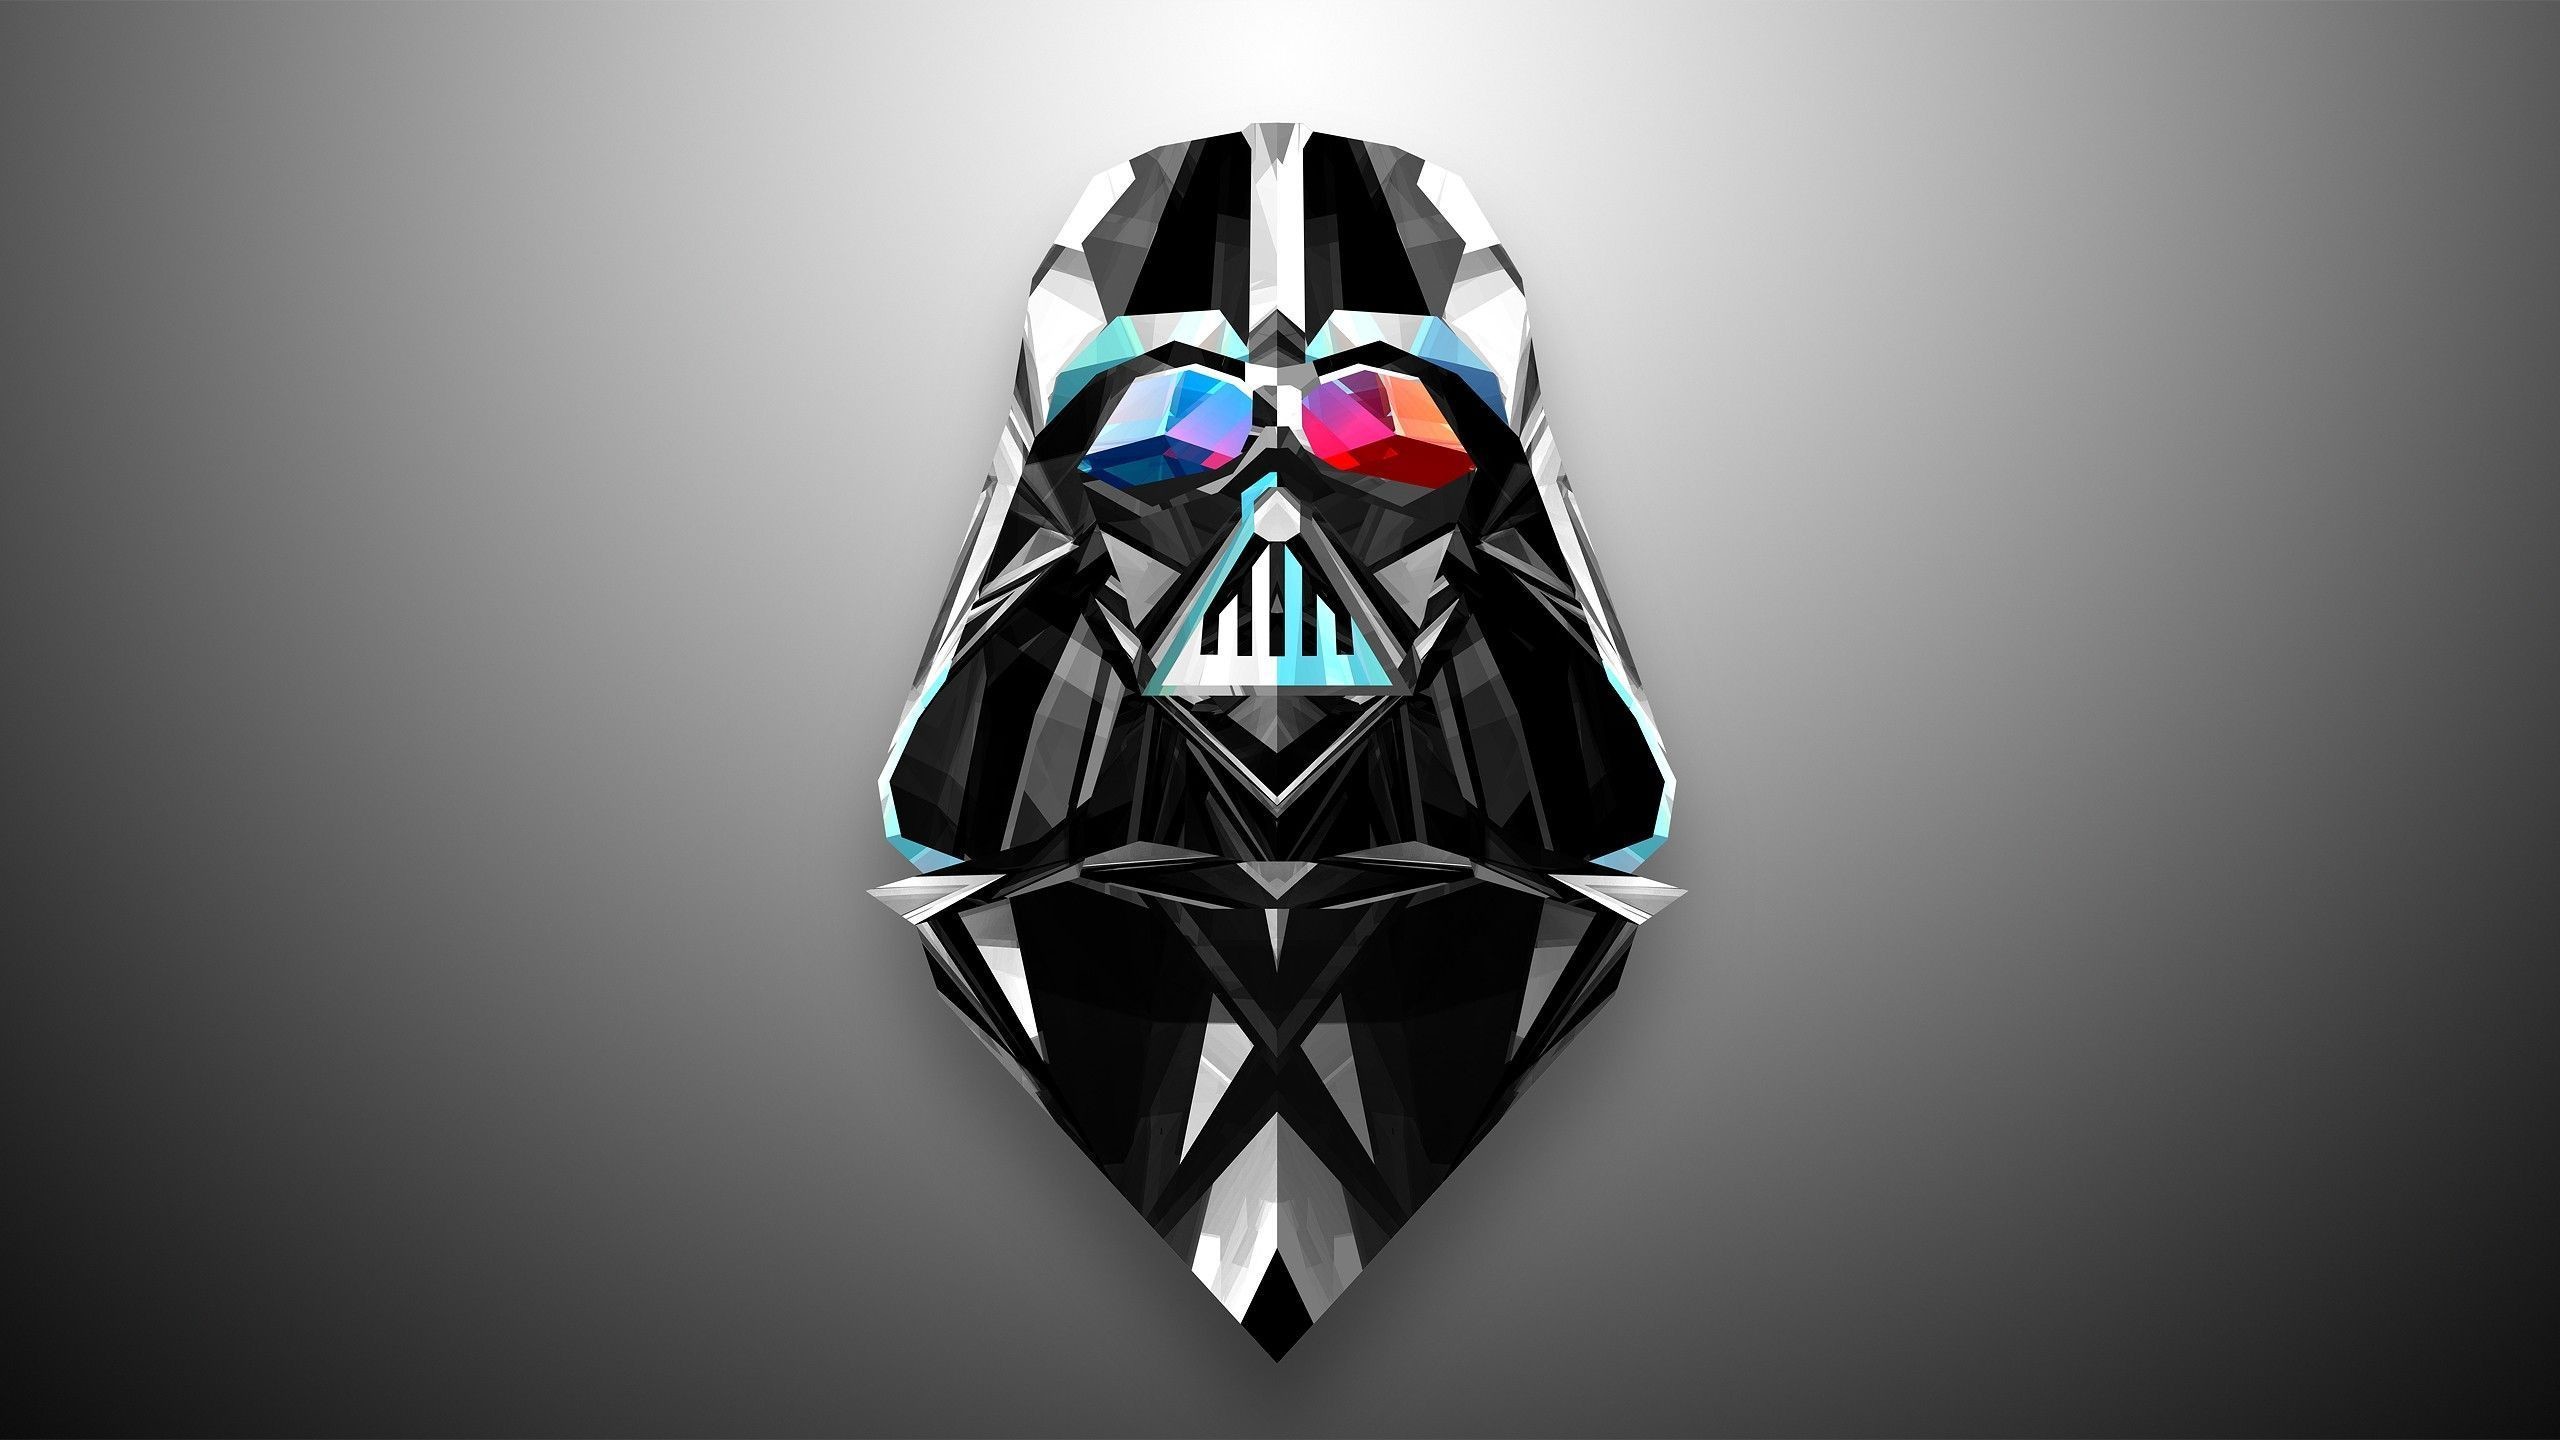 174 Darth Vader HD Wallpapers